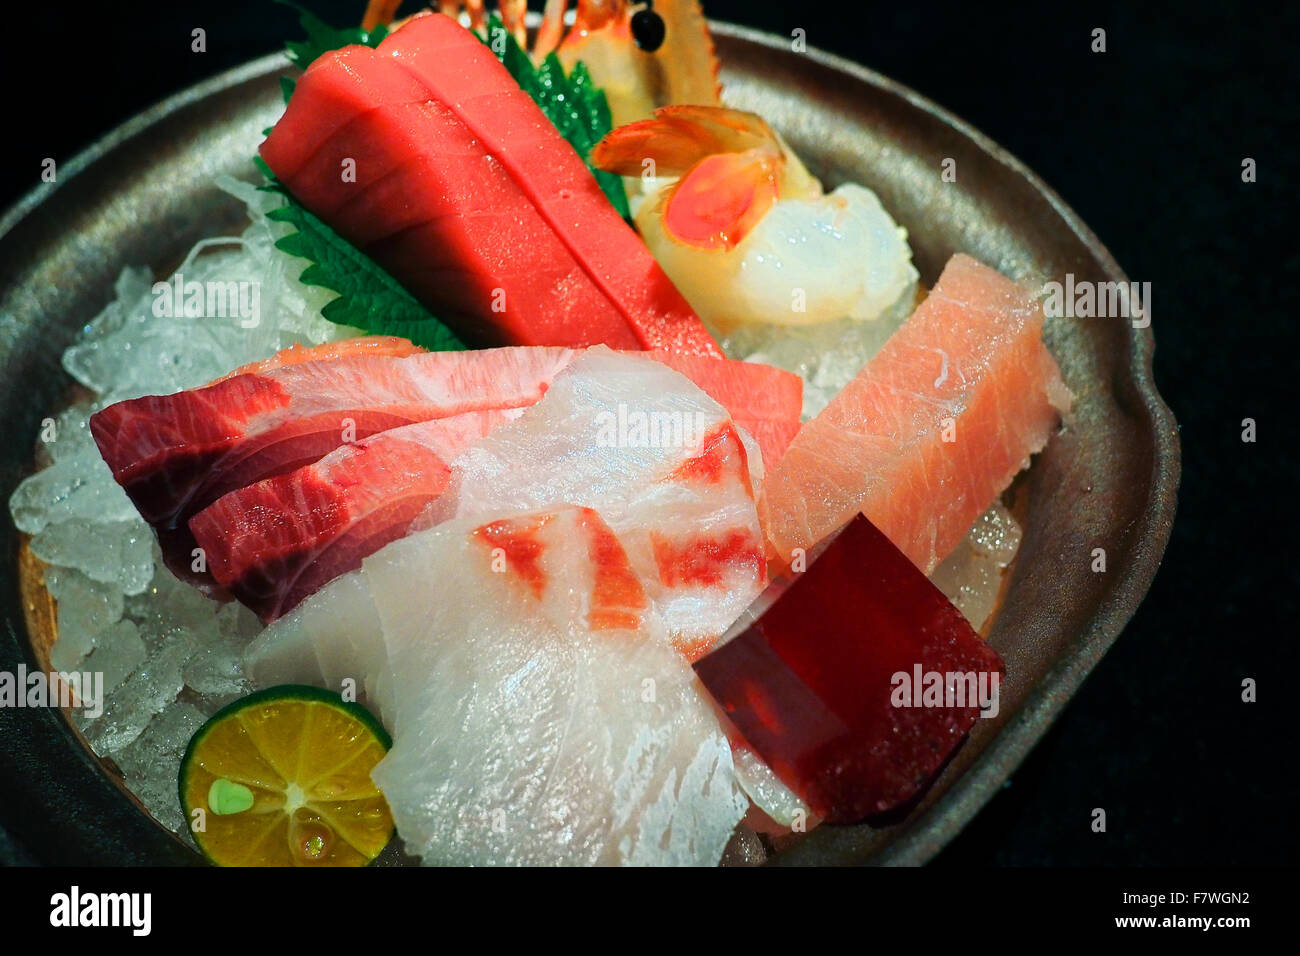 Platte mit frischem Sashimi (roher Fisch) auf einem Bett aus Eis Stockfoto